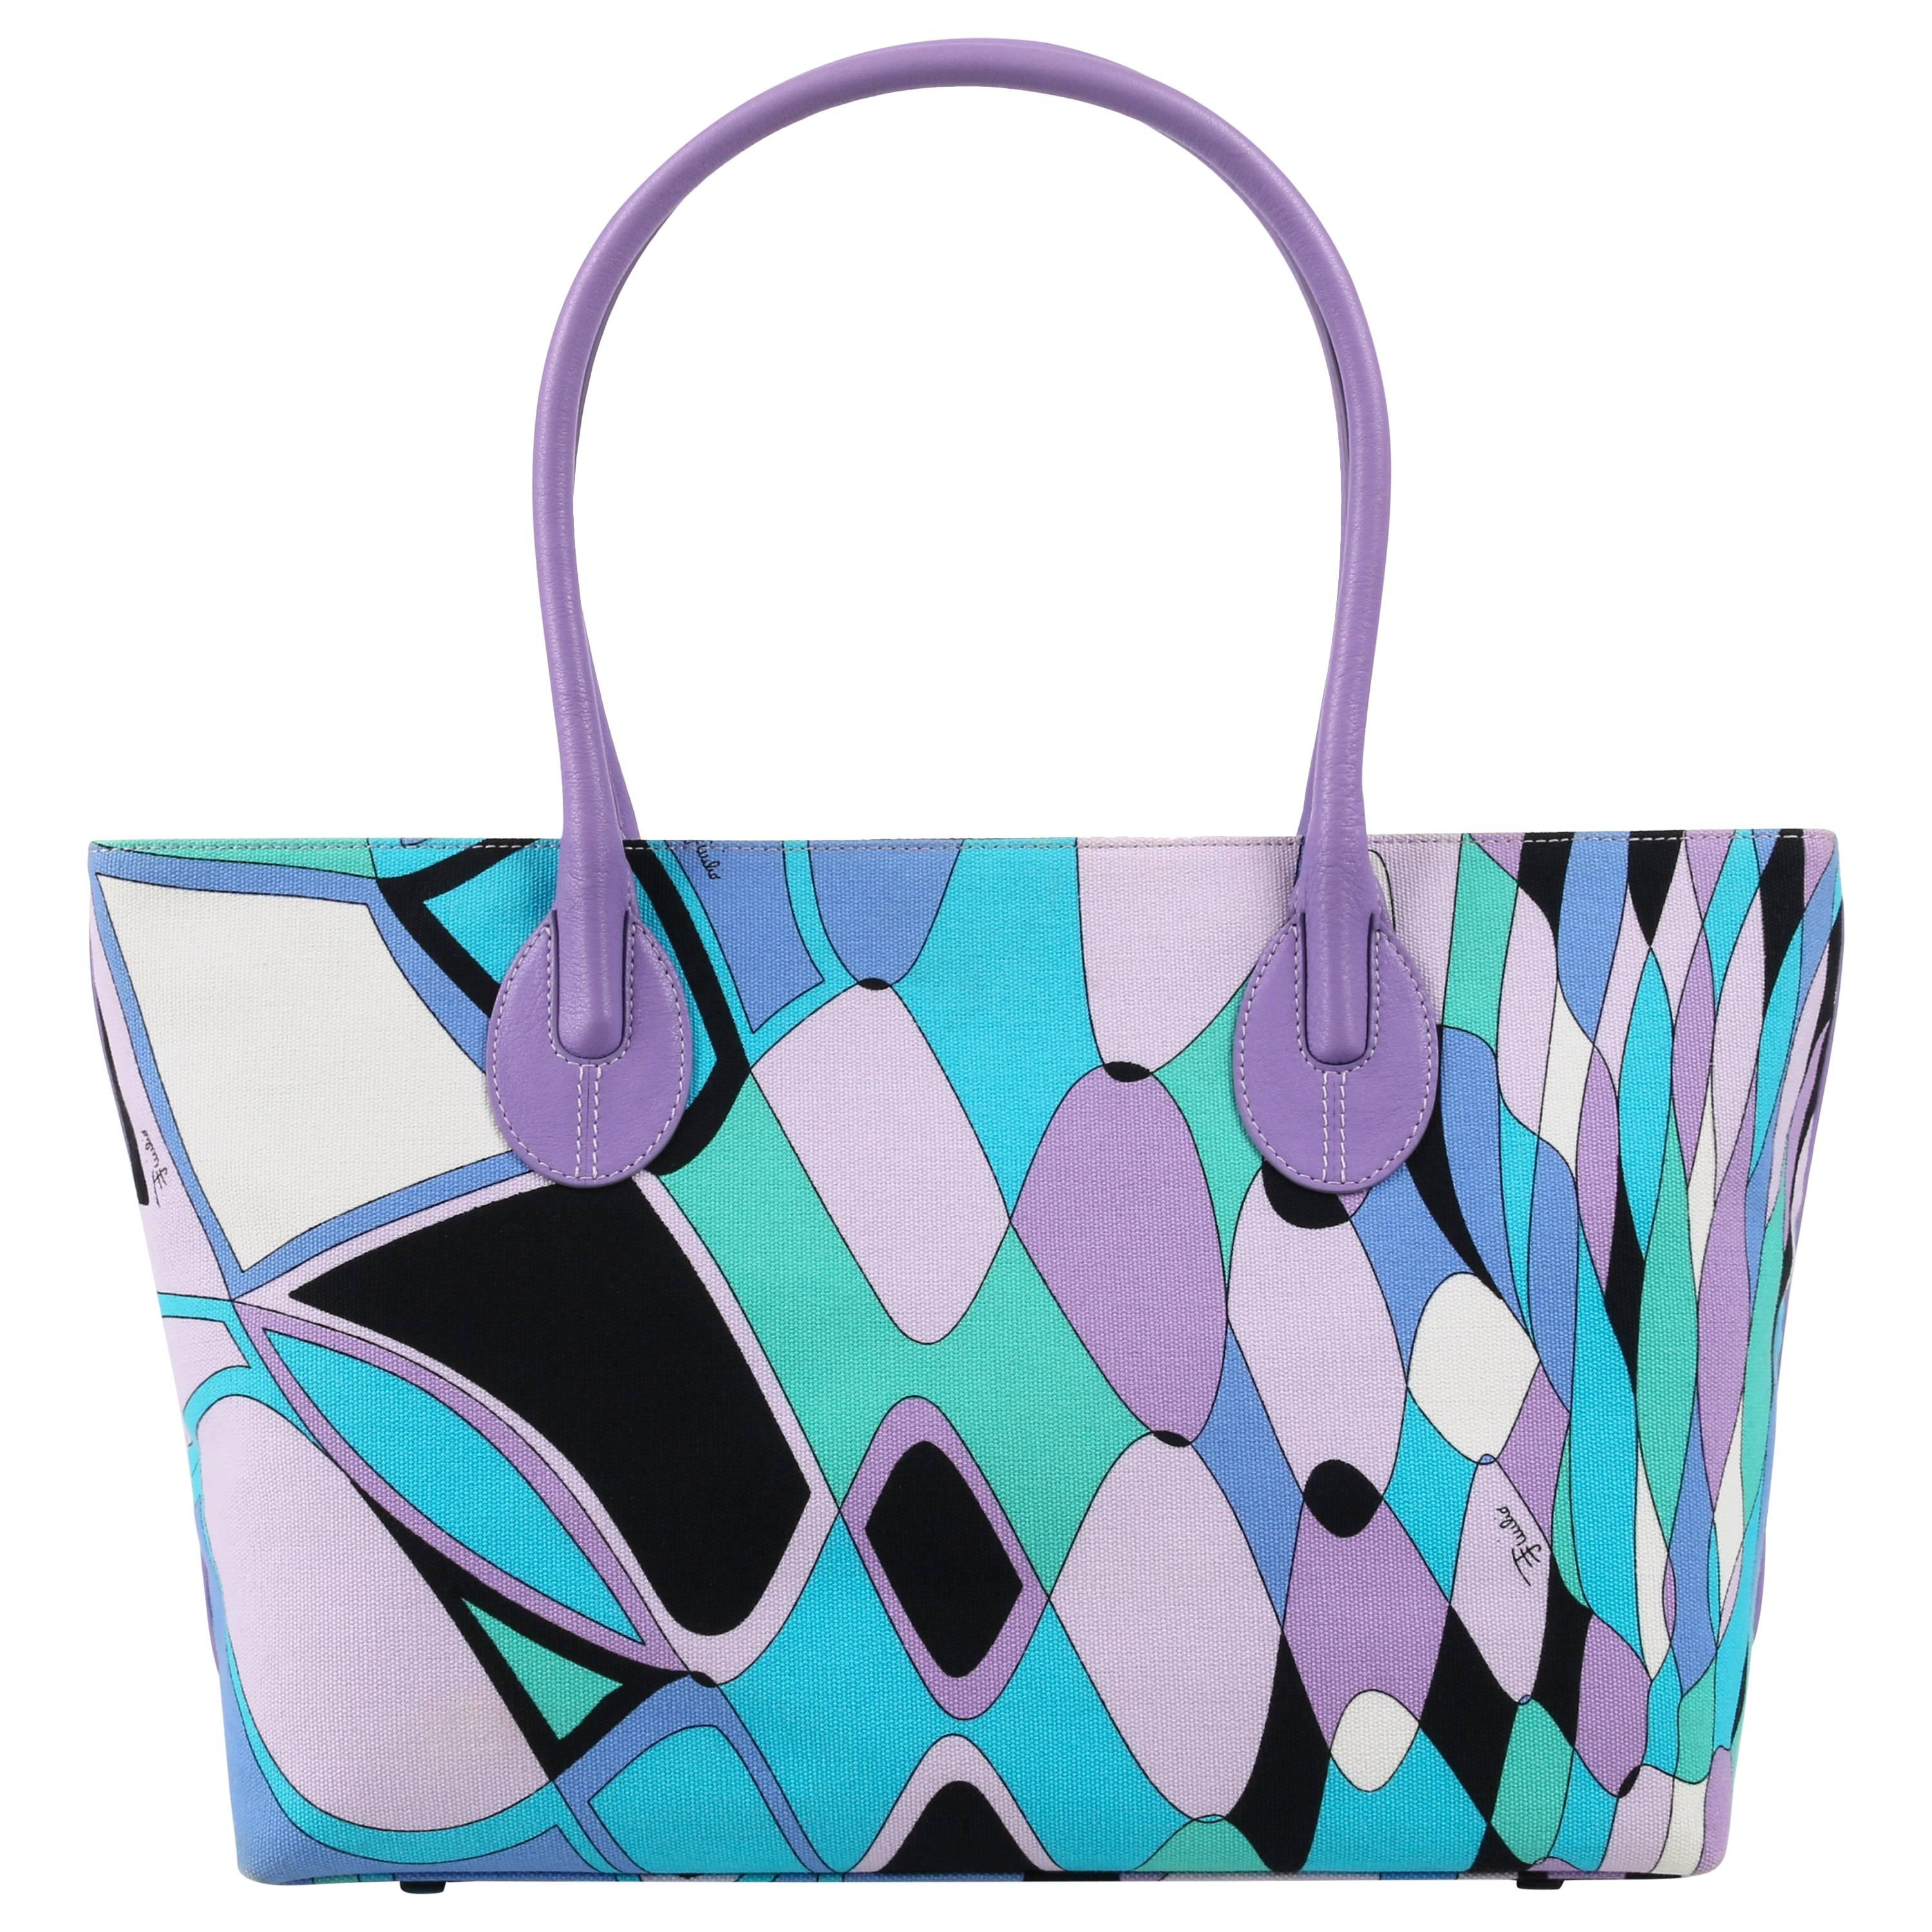 EMILIO PUCCI Multi Color "Reflessi" Signature Print Canvas Handbag Tote Purse